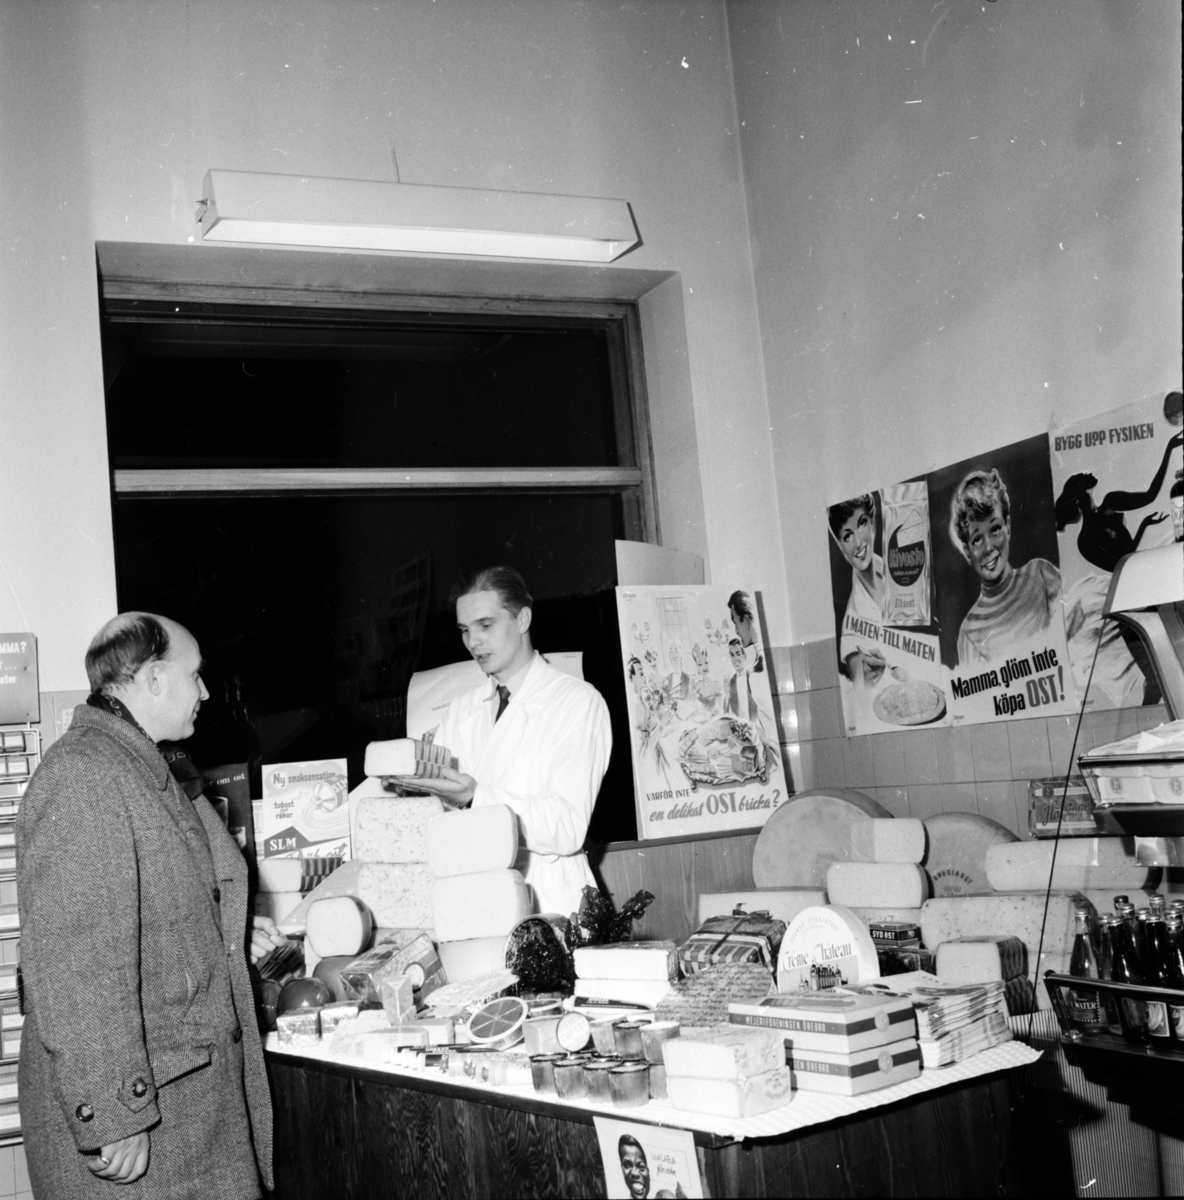 Mejeriföreningen ostutställning.
1955